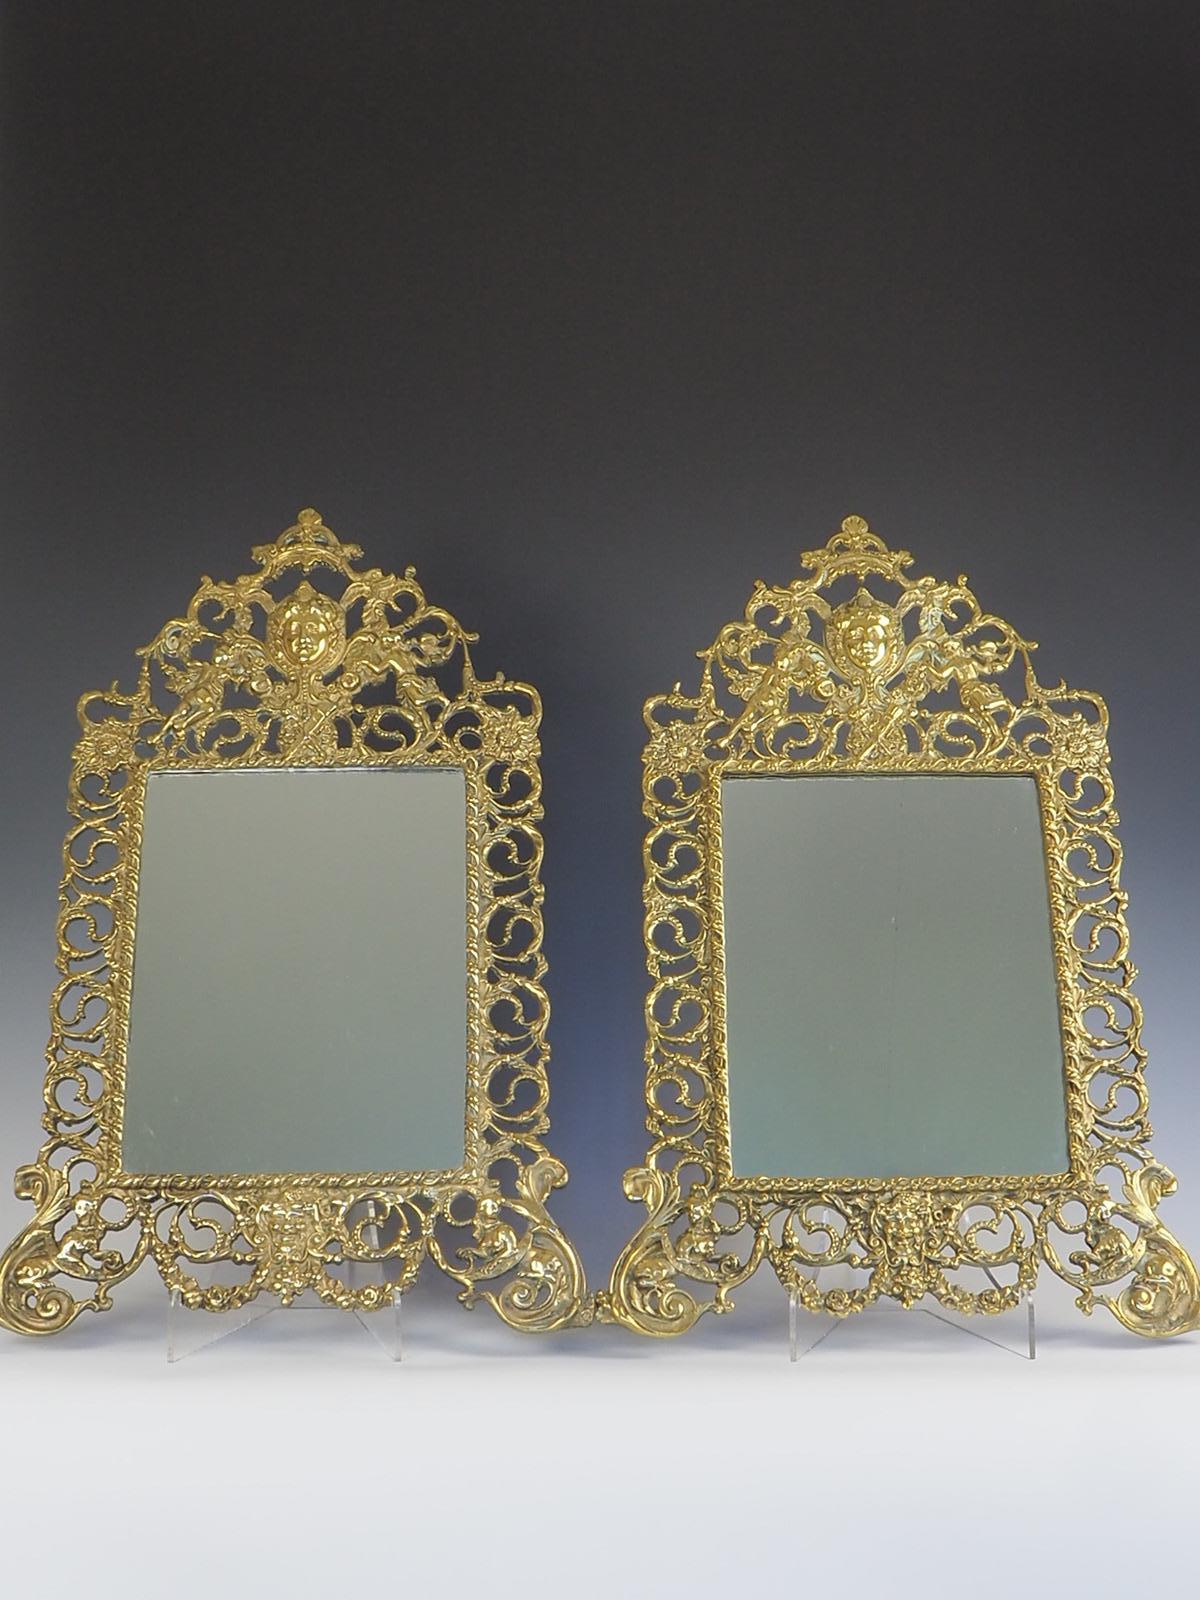 
Paire de miroirs muraux rococo français anciens en laiton